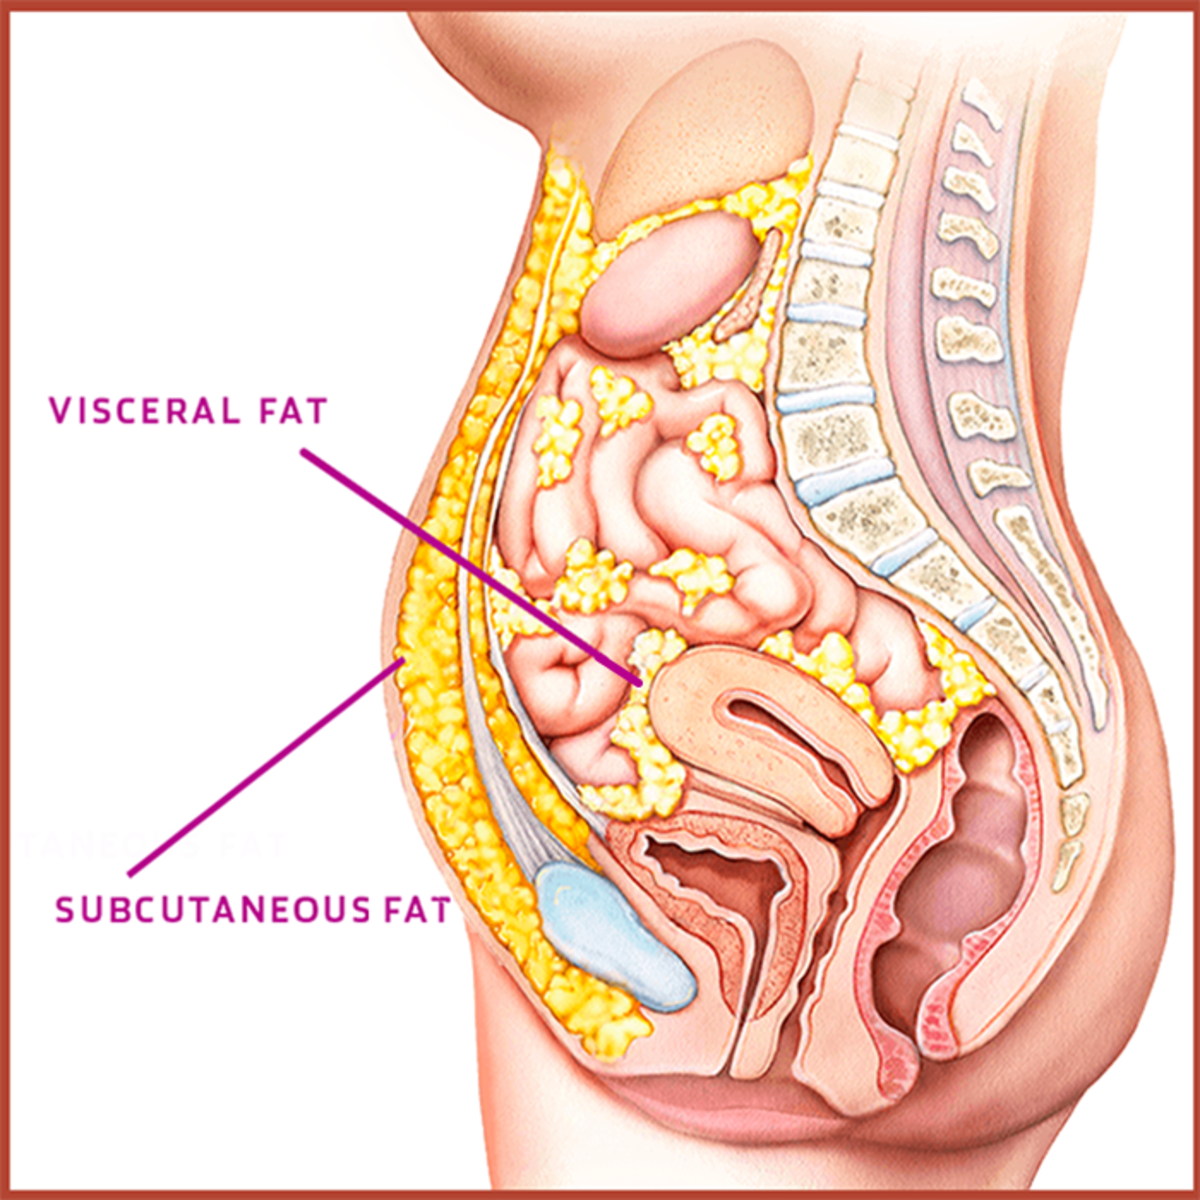 Visceral fat is the culprit.